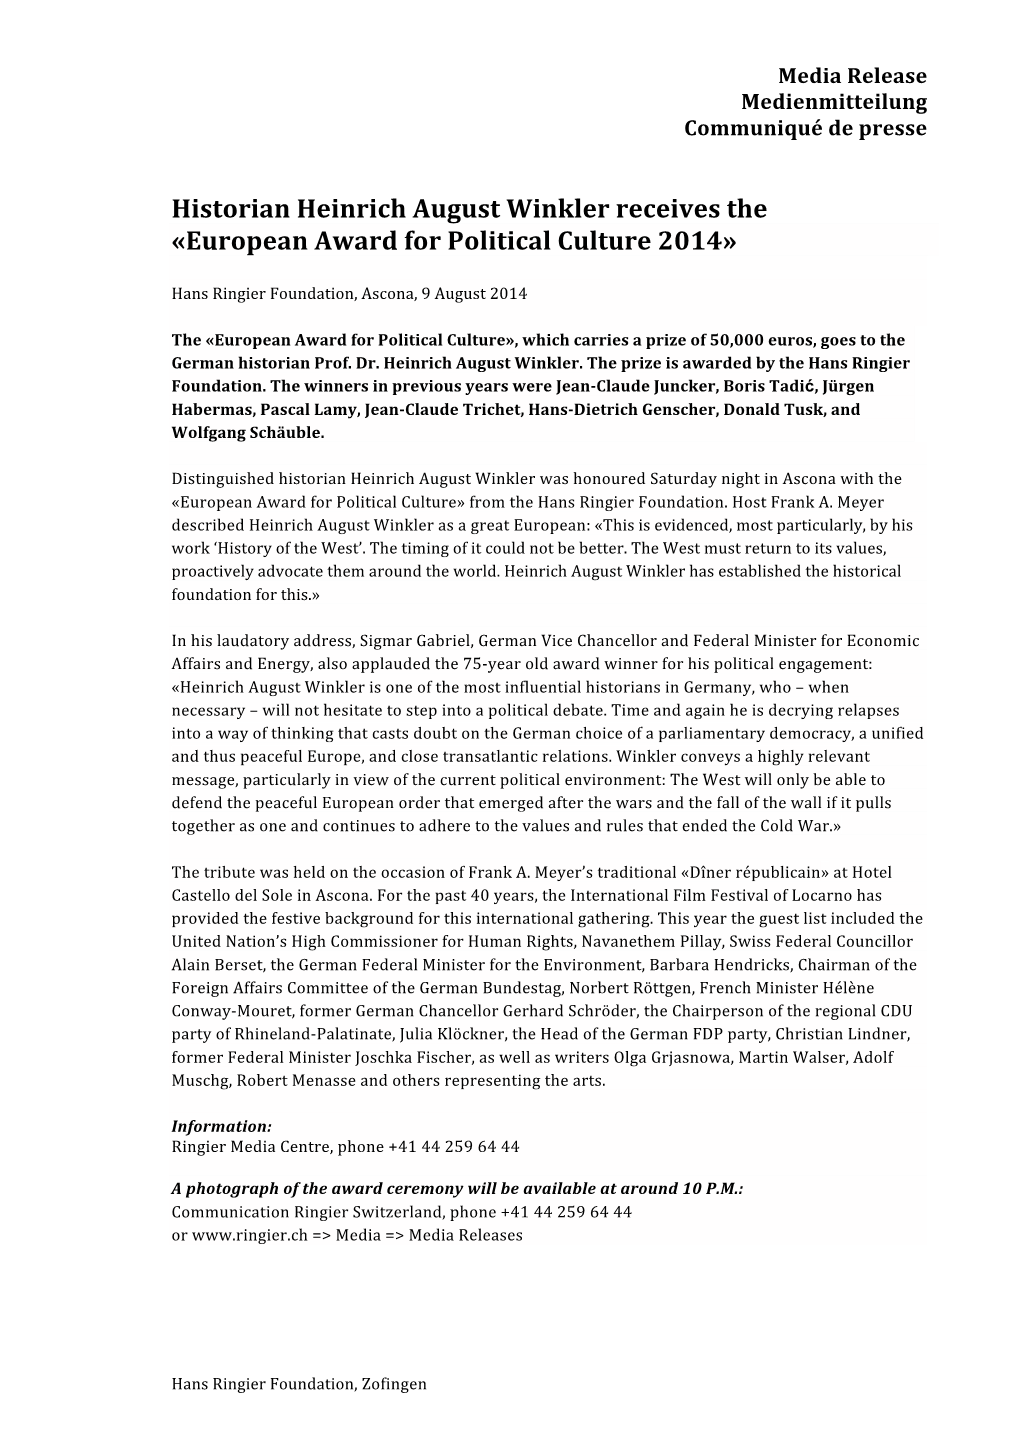 Media Release European Prize 2014 (PDF)